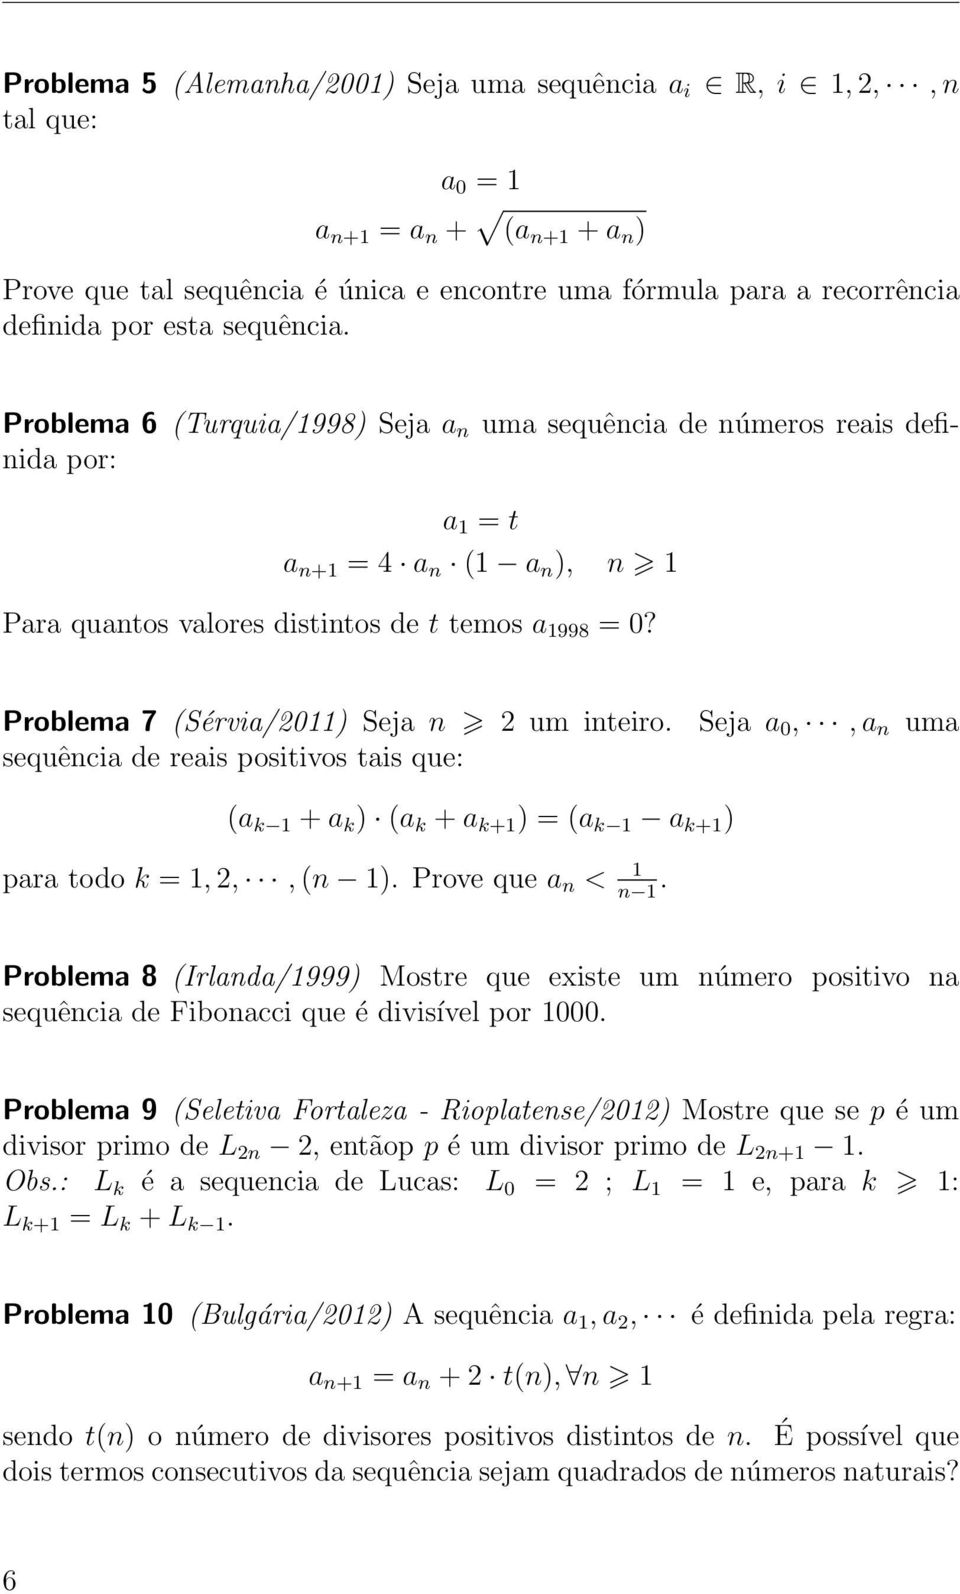 Problema 7 (Sérvia/011) Seja n um inteiro. Seja a 0,, a n uma sequência de reais positivos tais que: (a k 1 + a k ) (a k + a k+1 ) = (a k 1 a k+1 ) para todo k = 1,,, (n 1). Prove que a n < 1 n 1.